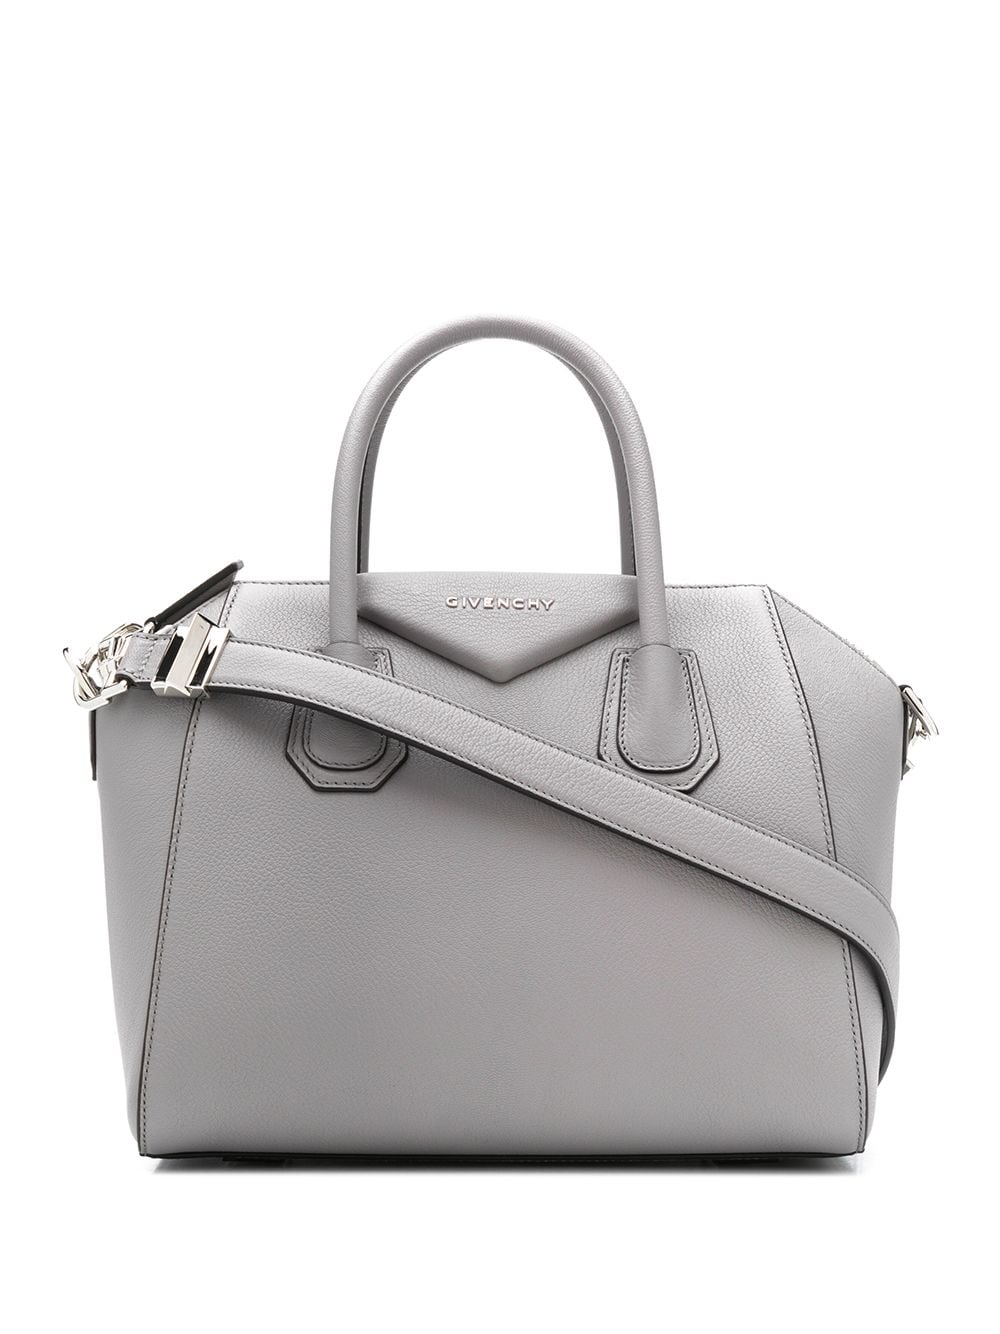 фото Givenchy сумка-тоут antigona